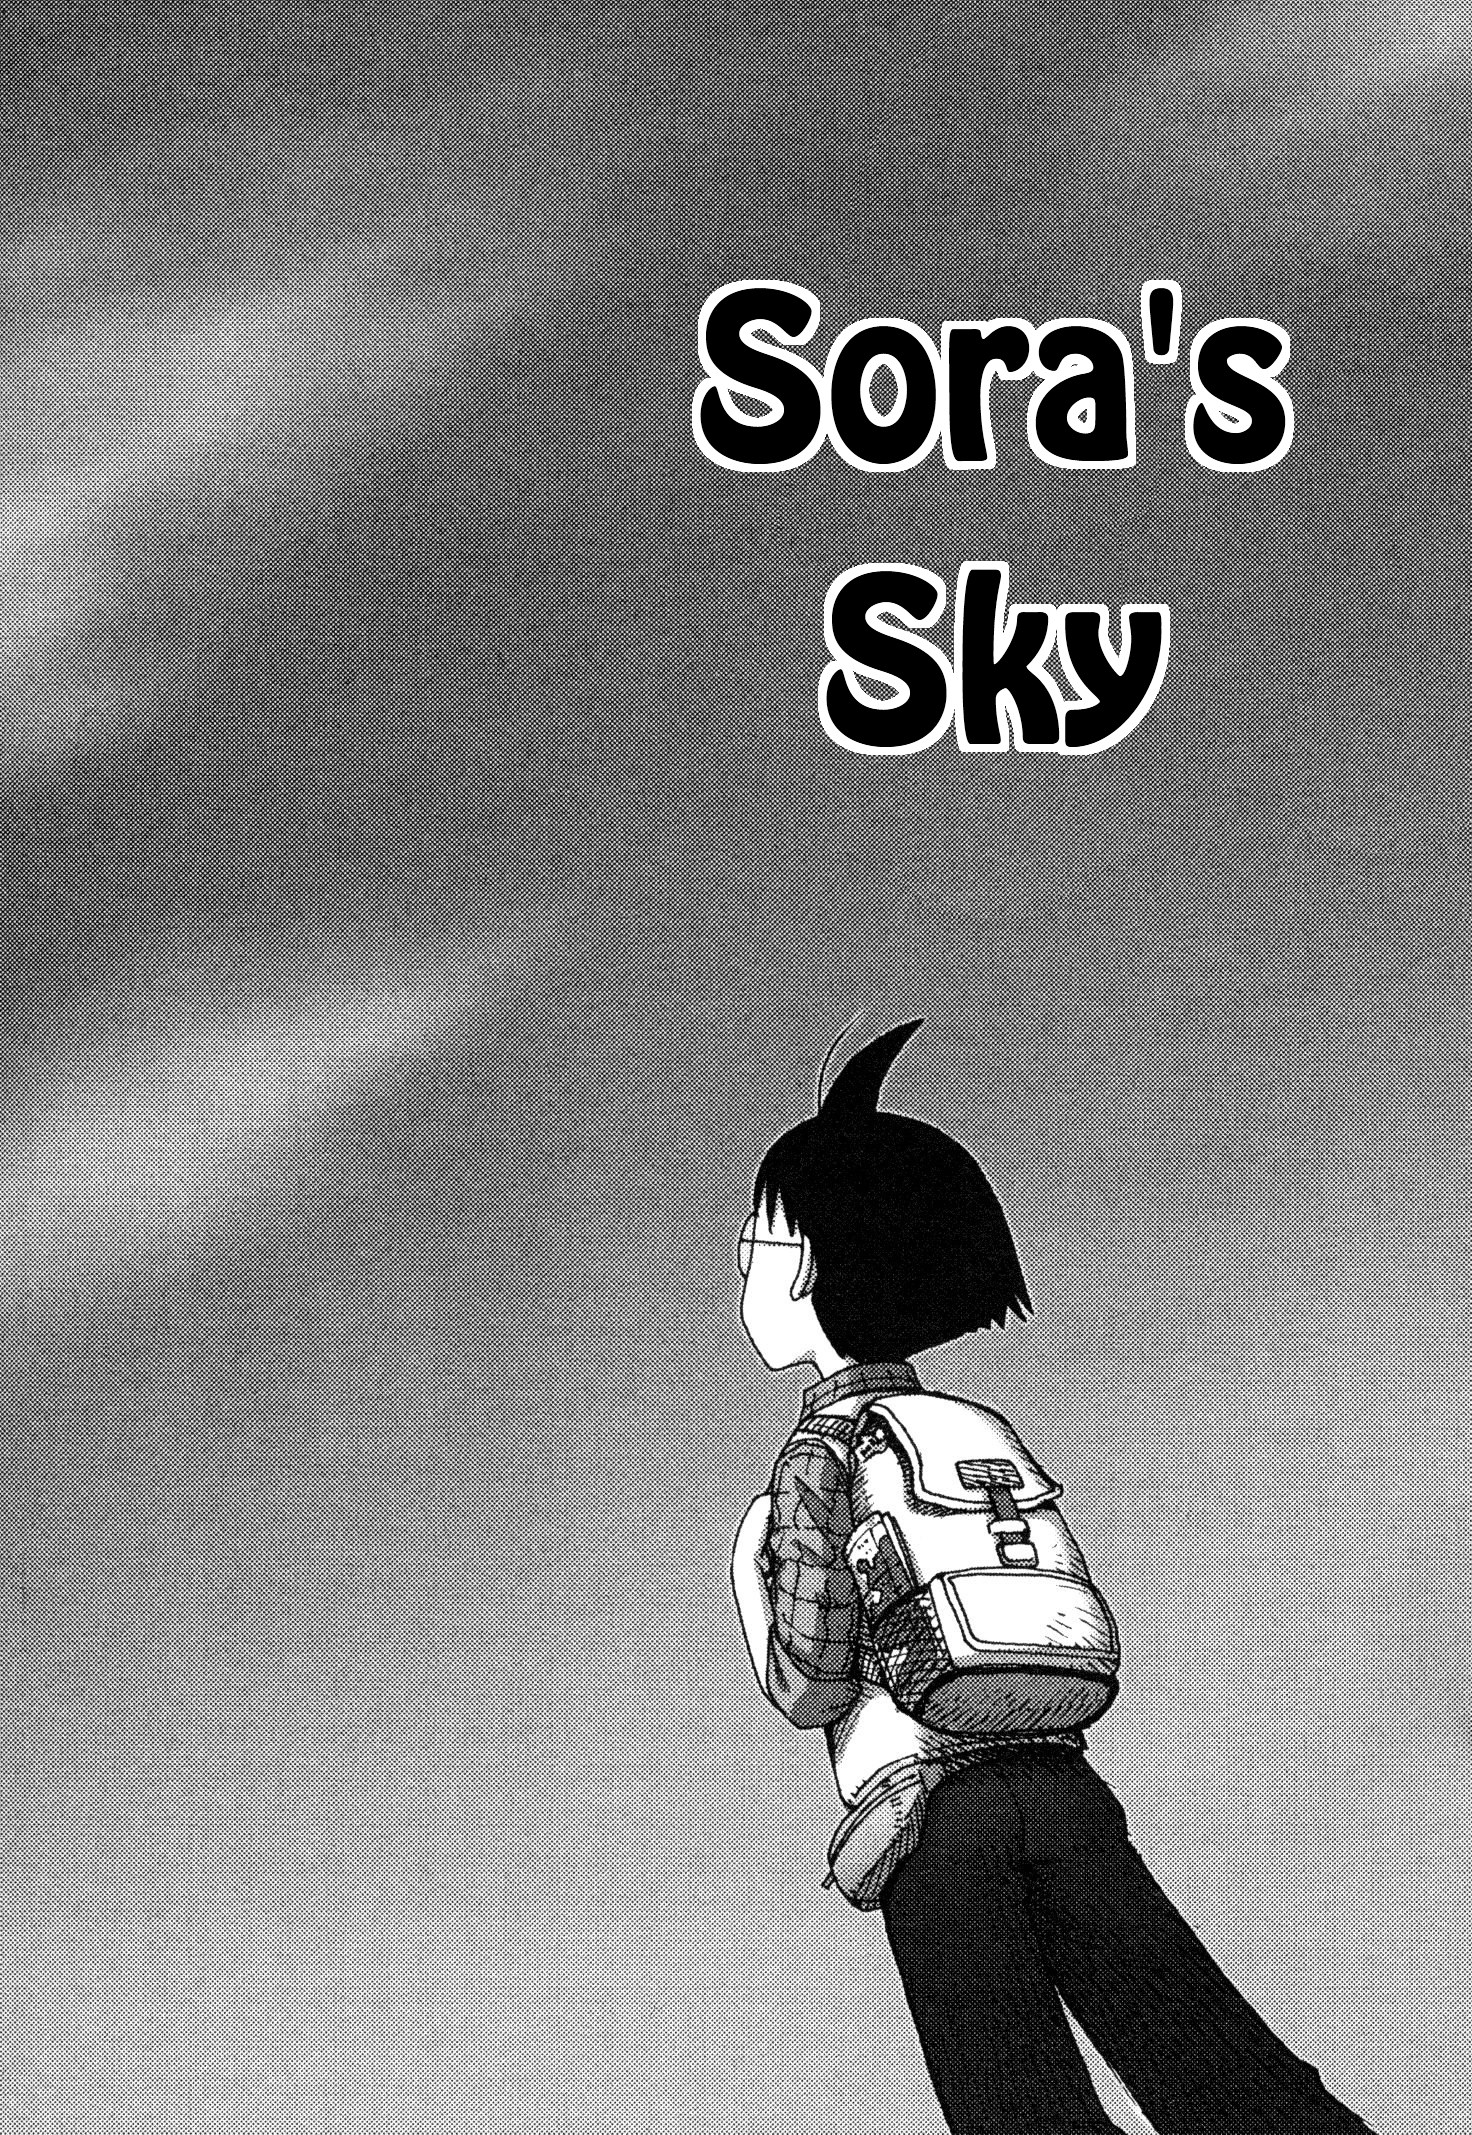 Il viaggio di Sora